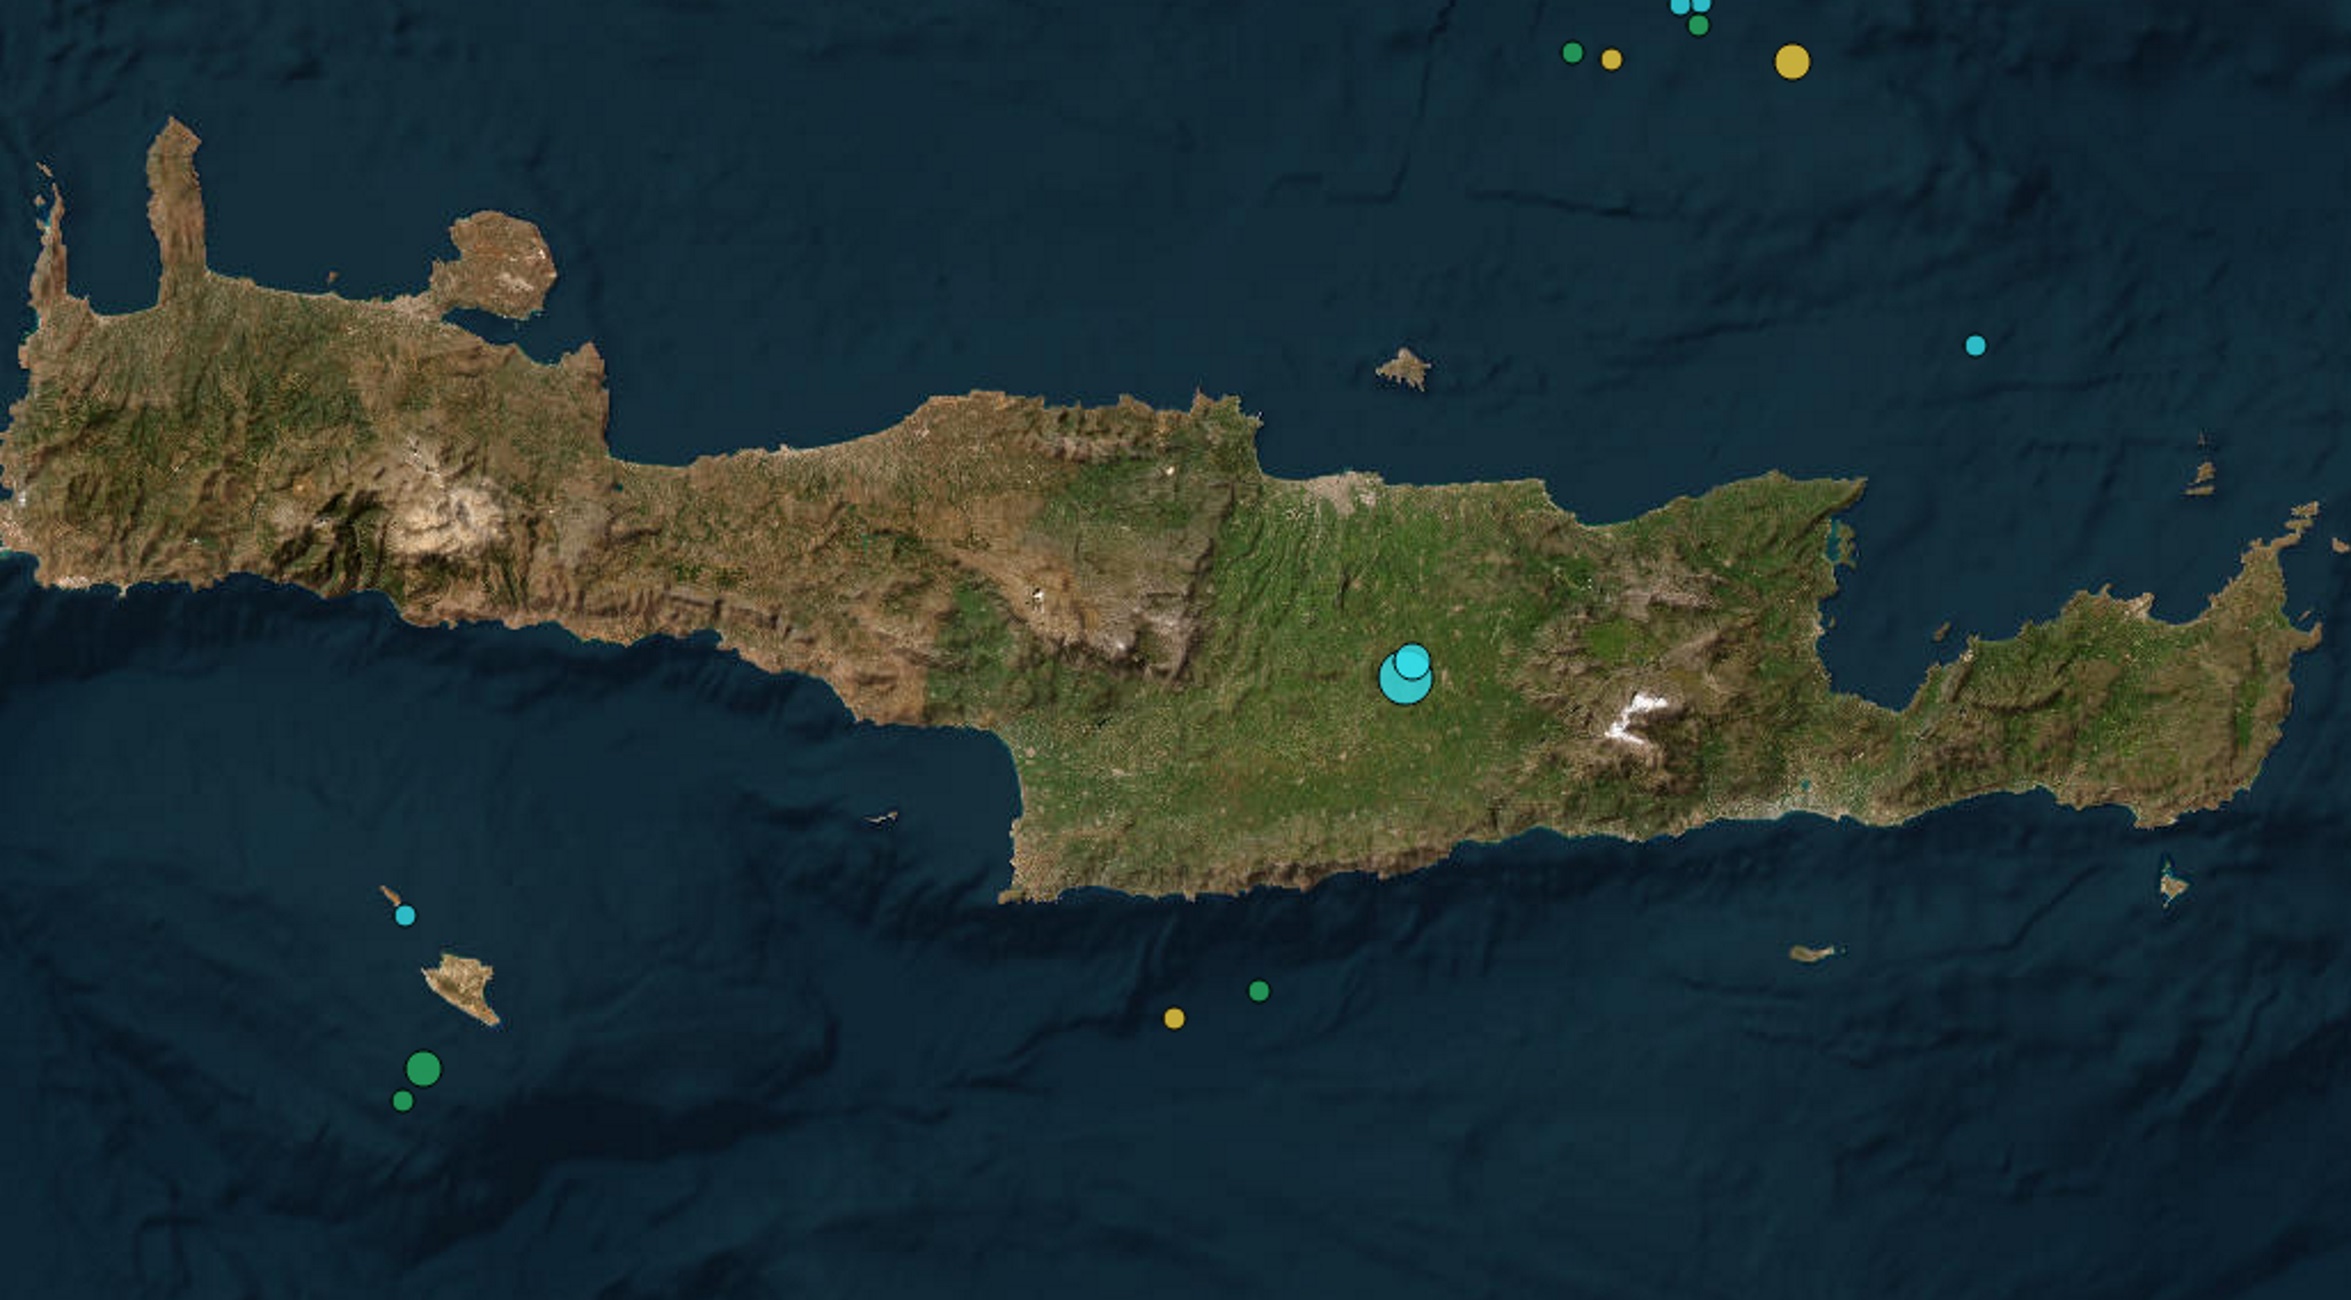 Σεισμός 4,2 Ρίχτερ στο Αρκαλοχώρι της Κρήτης, προηγήθηκε σεισμική δόνηση 3,6 Ρίχτερ